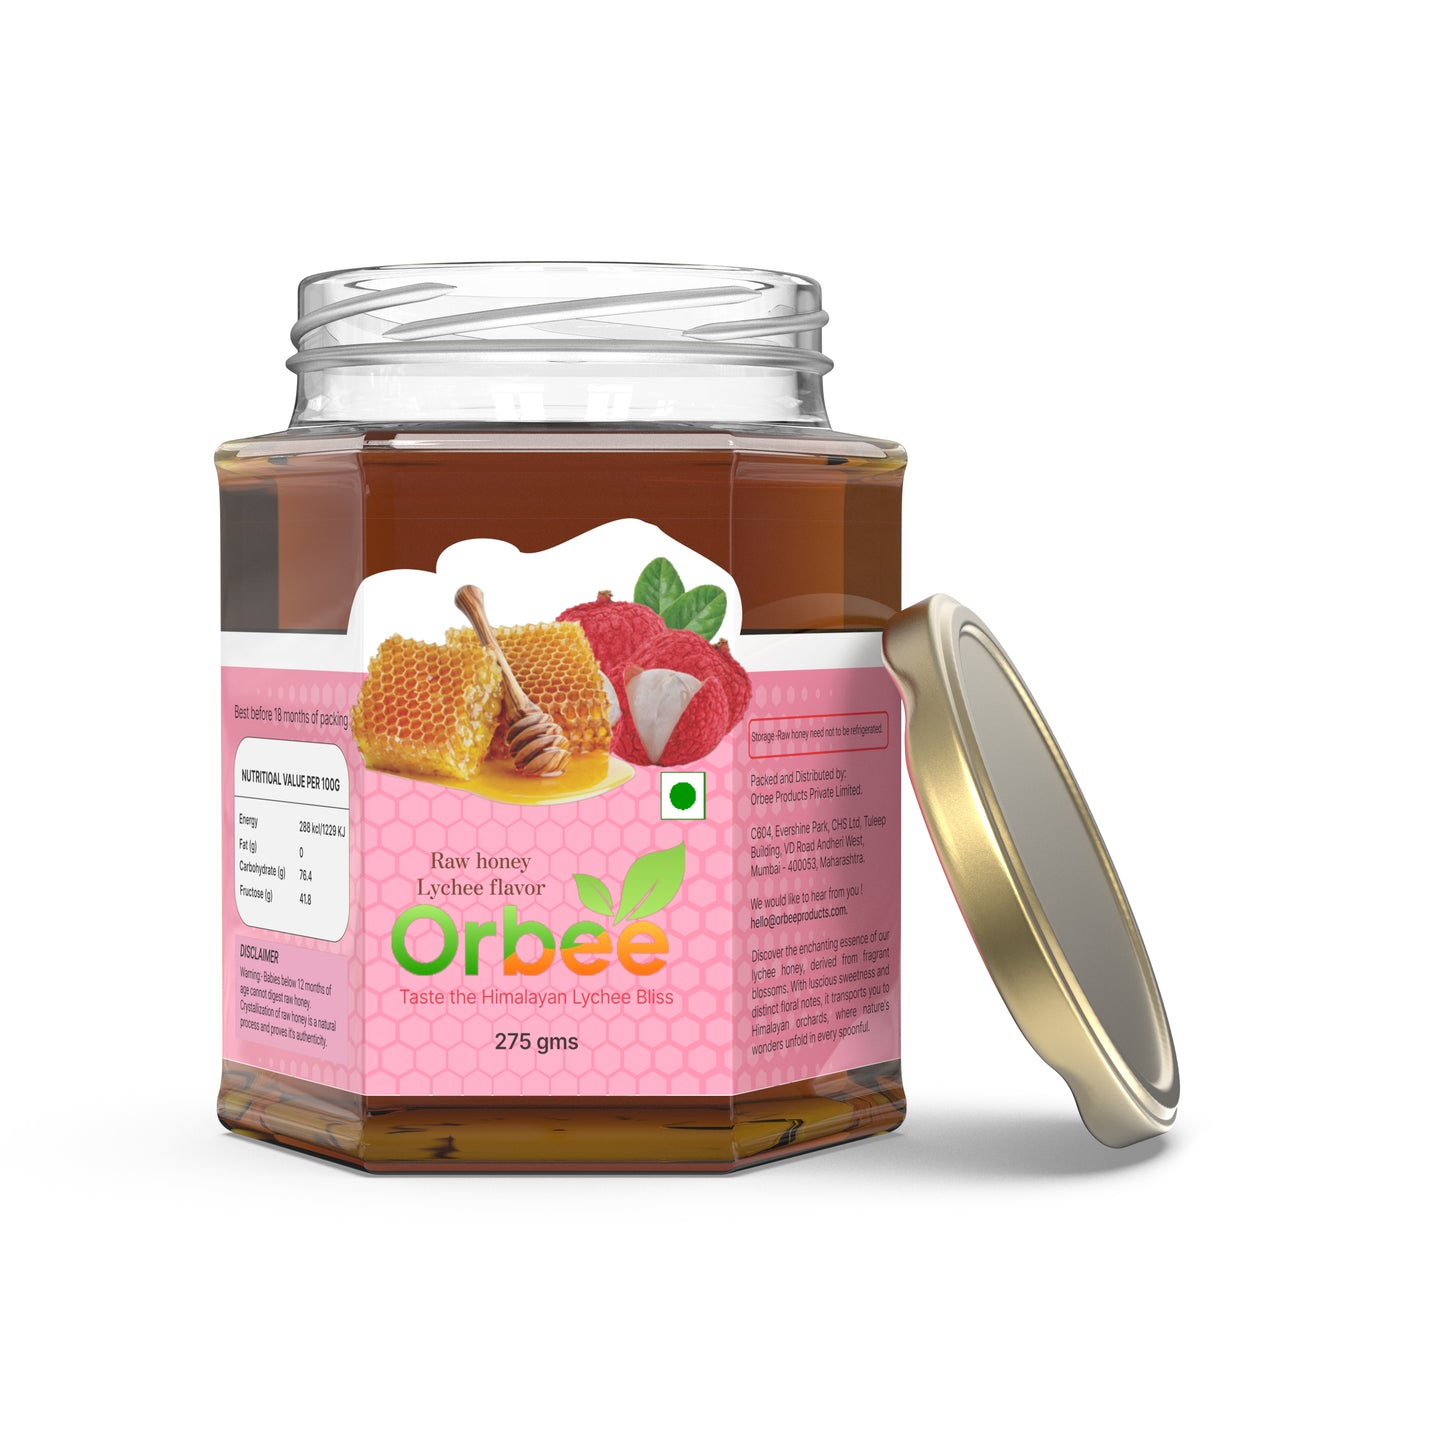 Orbee lychee honey 275gms